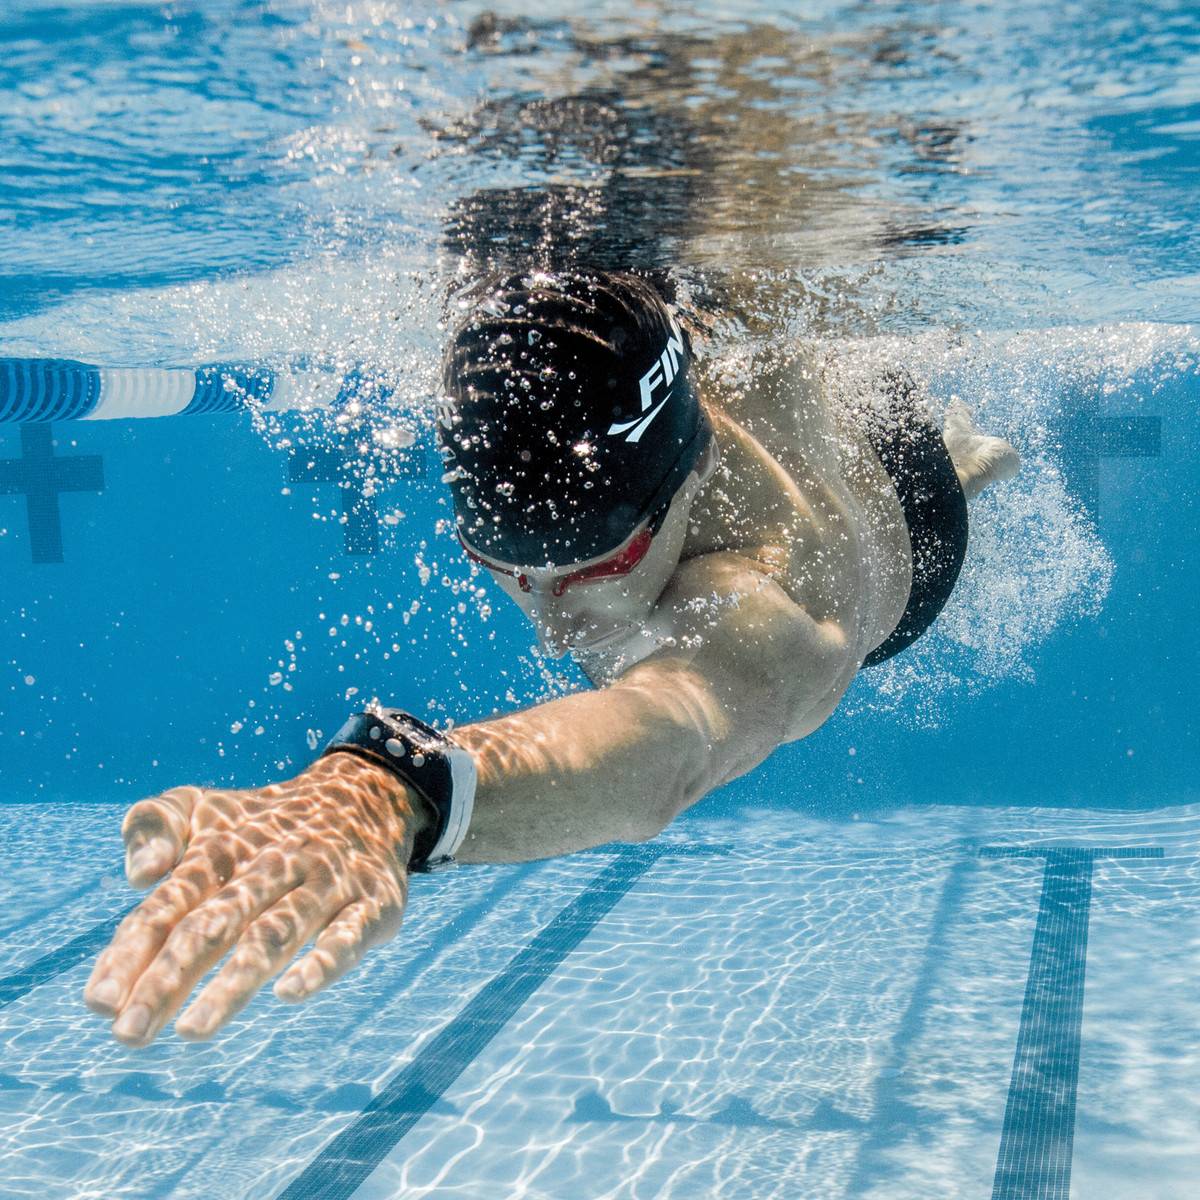 Тренировки по плаванию: программа индивидуальных тренировок для начинающих взрослых или детей в бассейне и что нужно для этого